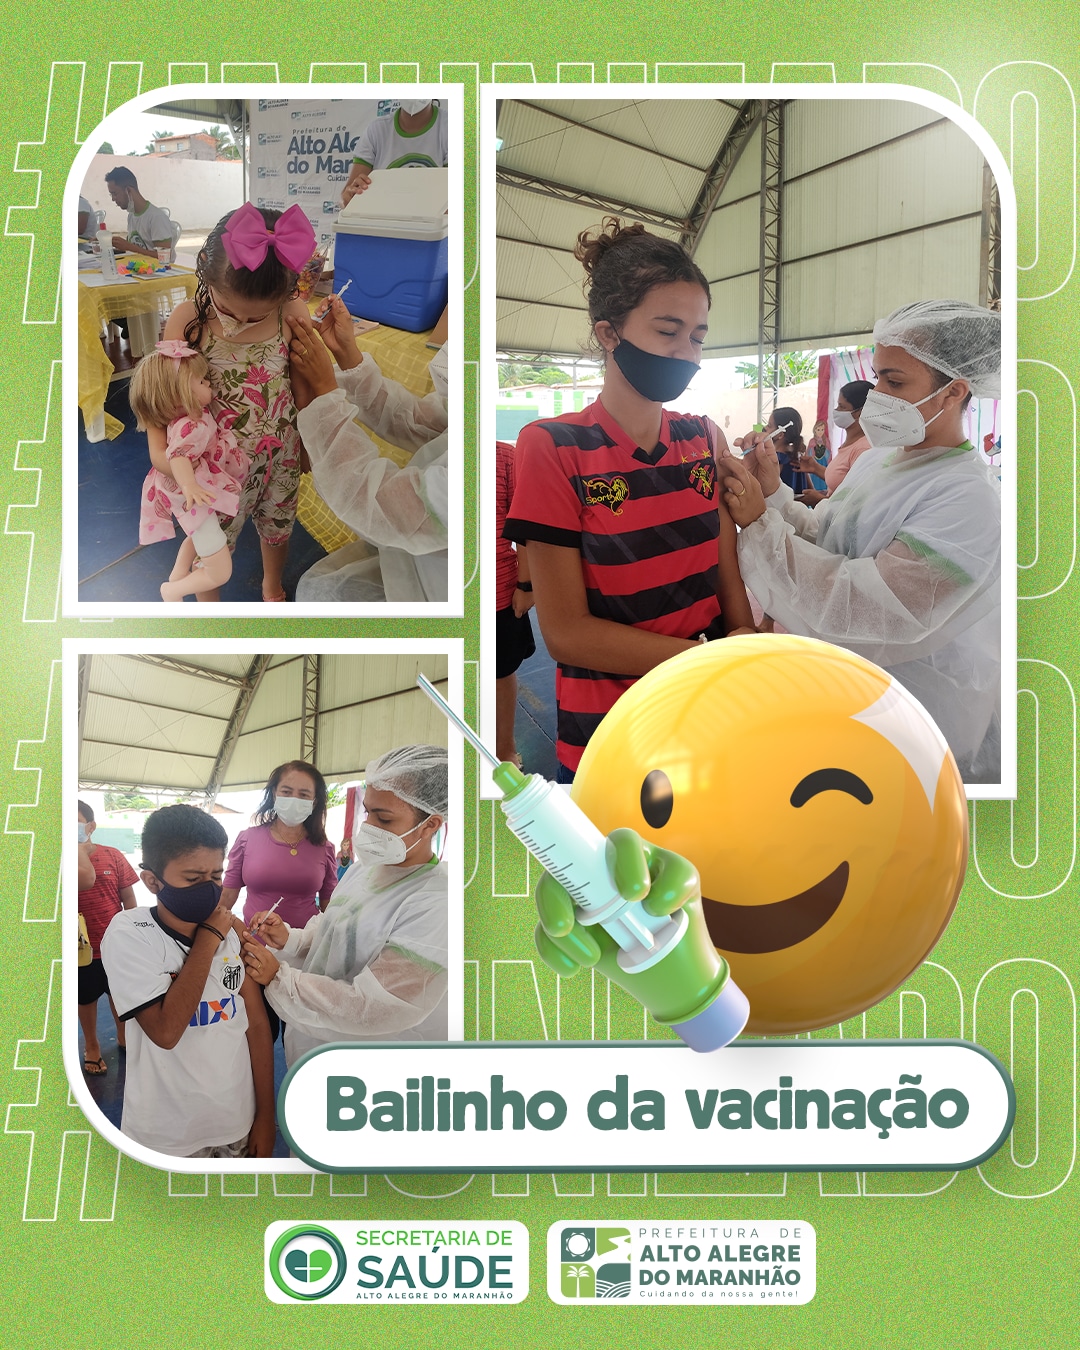 Prefeitura de Alto Alegre do Maranhão realiza bailinho da vacinação